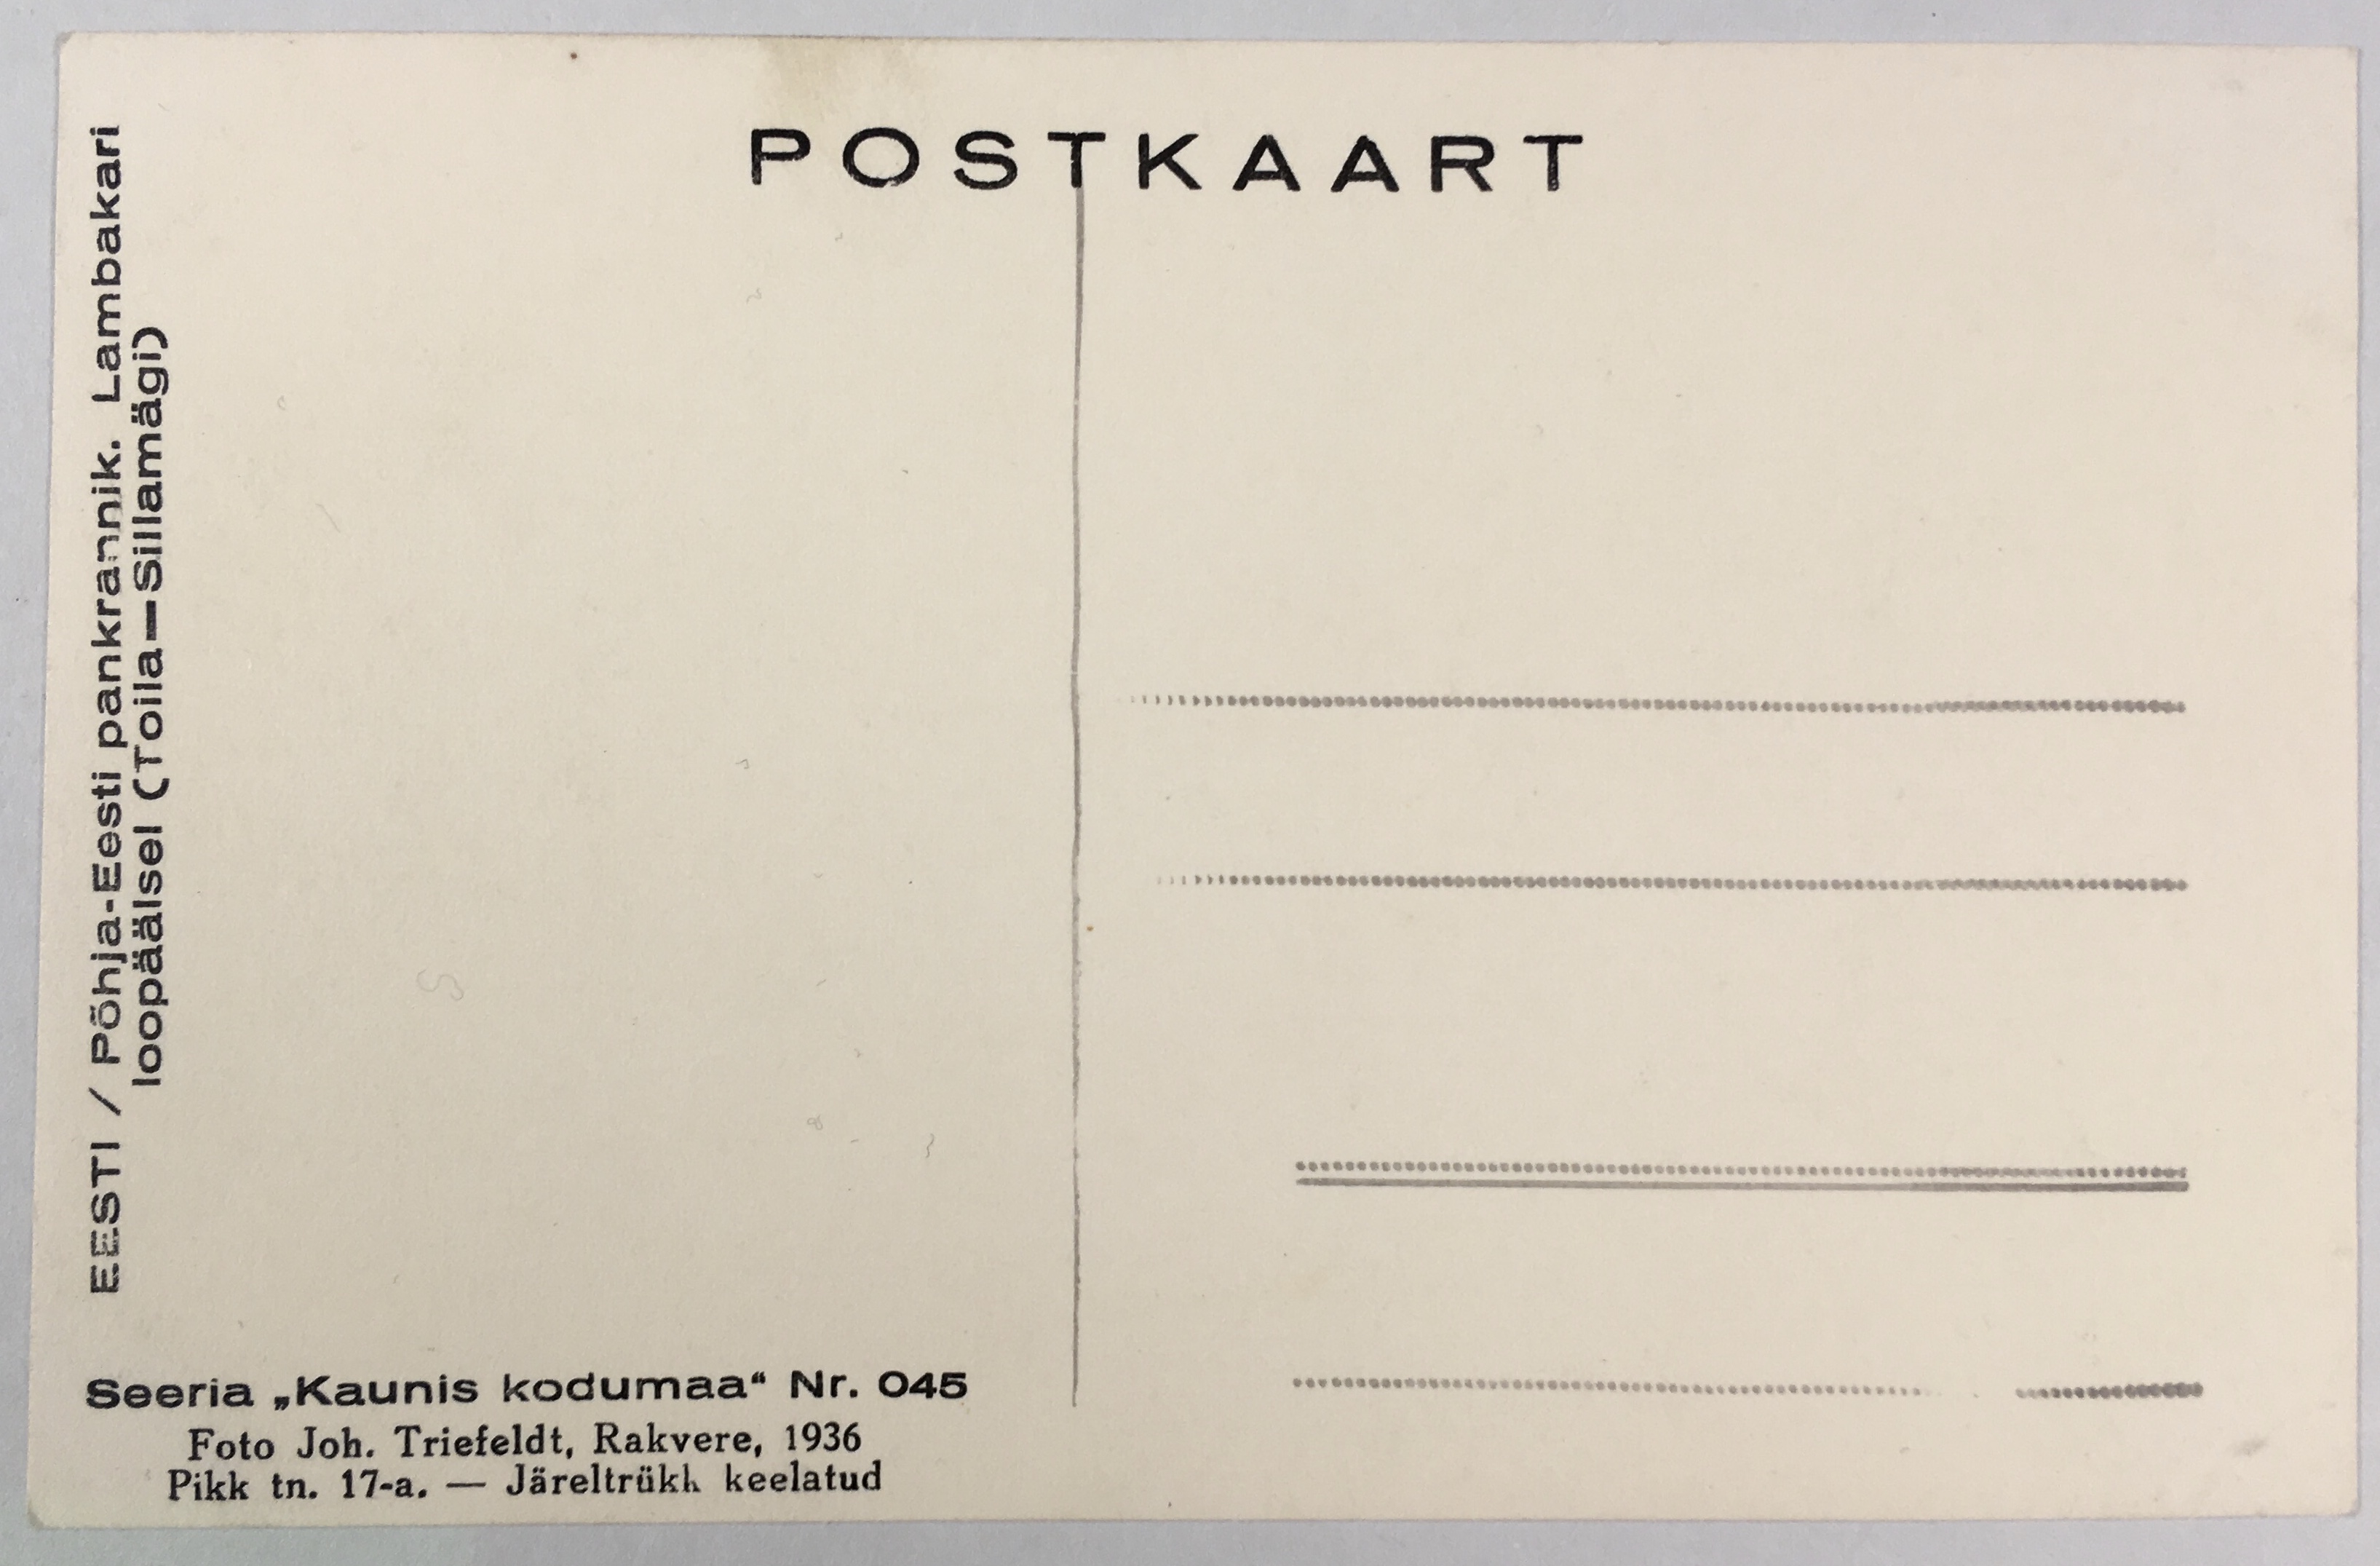 Fotopostkaart sarjast "Kaunis kodumaa" Nr. 045 (tagakülg) - Foto: Carl Sarap (1893-1942)